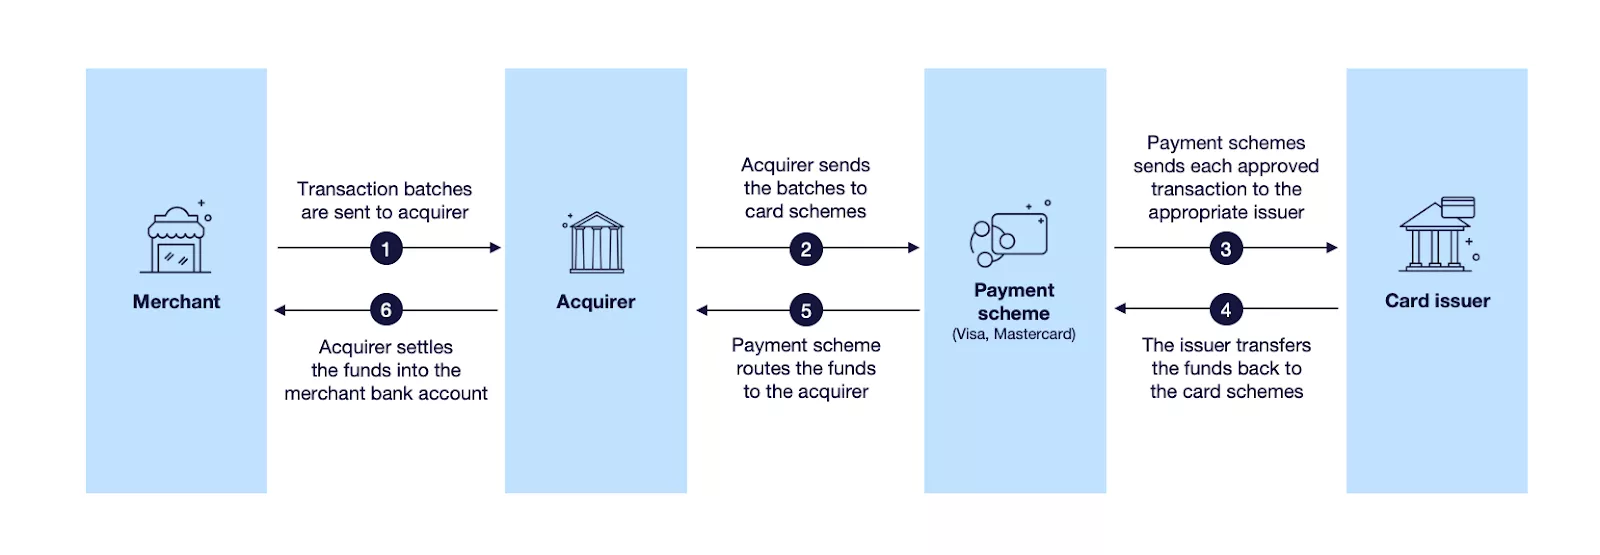 Card scheme transaction